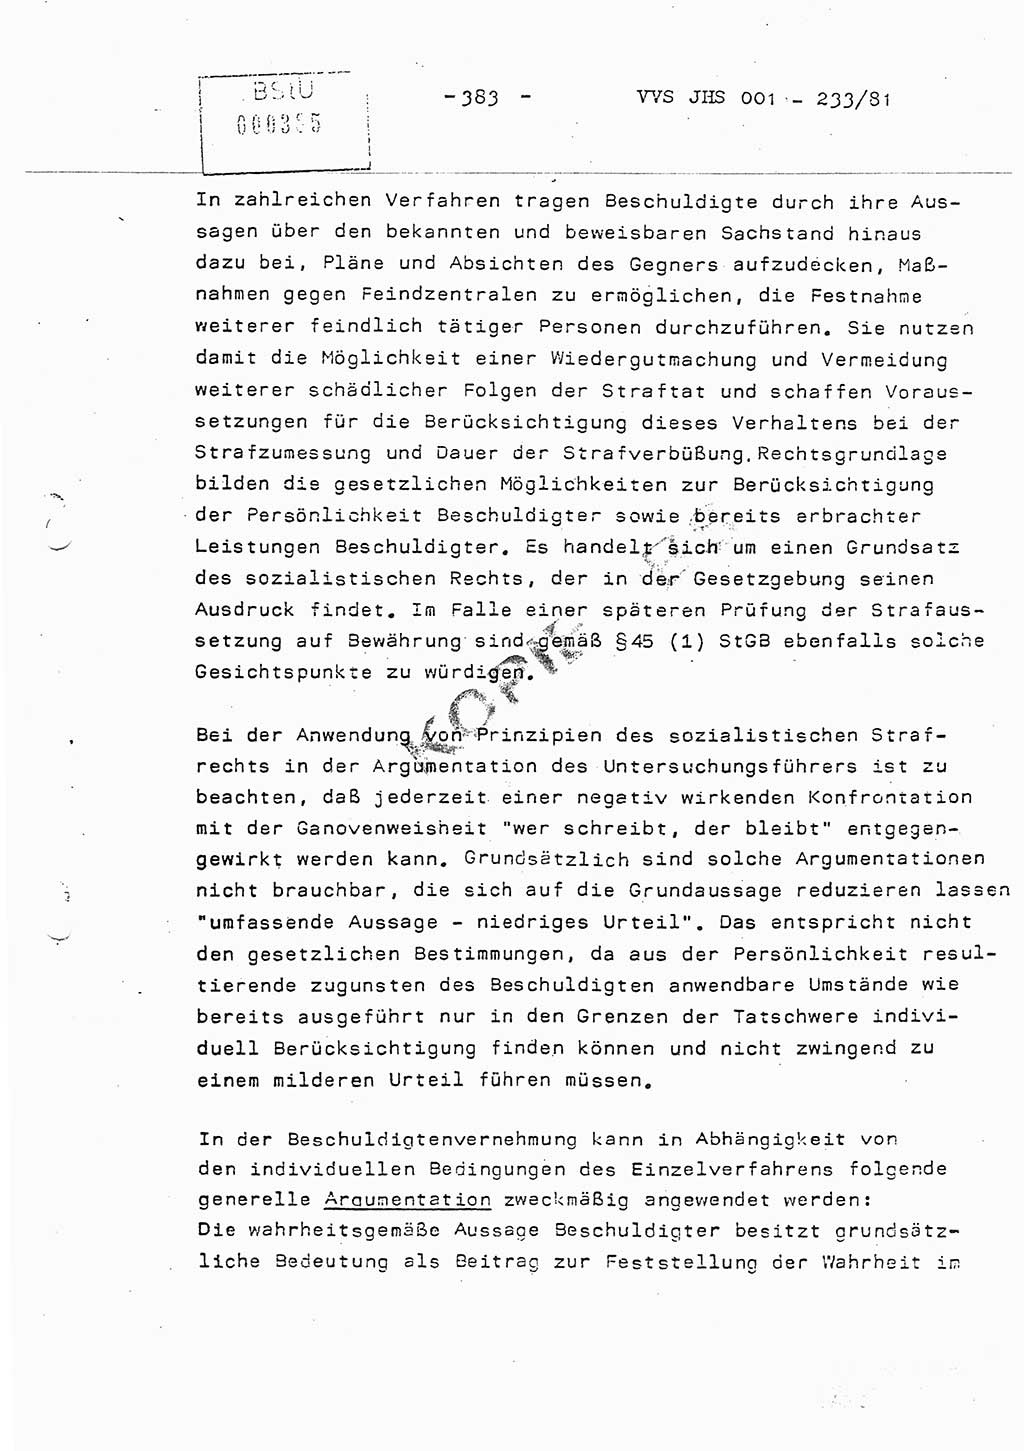 Dissertation Oberstleutnant Horst Zank (JHS), Oberstleutnant Dr. Karl-Heinz Knoblauch (JHS), Oberstleutnant Gustav-Adolf Kowalewski (HA Ⅸ), Oberstleutnant Wolfgang Plötner (HA Ⅸ), Ministerium für Staatssicherheit (MfS) [Deutsche Demokratische Republik (DDR)], Juristische Hochschule (JHS), Vertrauliche Verschlußsache (VVS) o001-233/81, Potsdam 1981, Blatt 383 (Diss. MfS DDR JHS VVS o001-233/81 1981, Bl. 383)